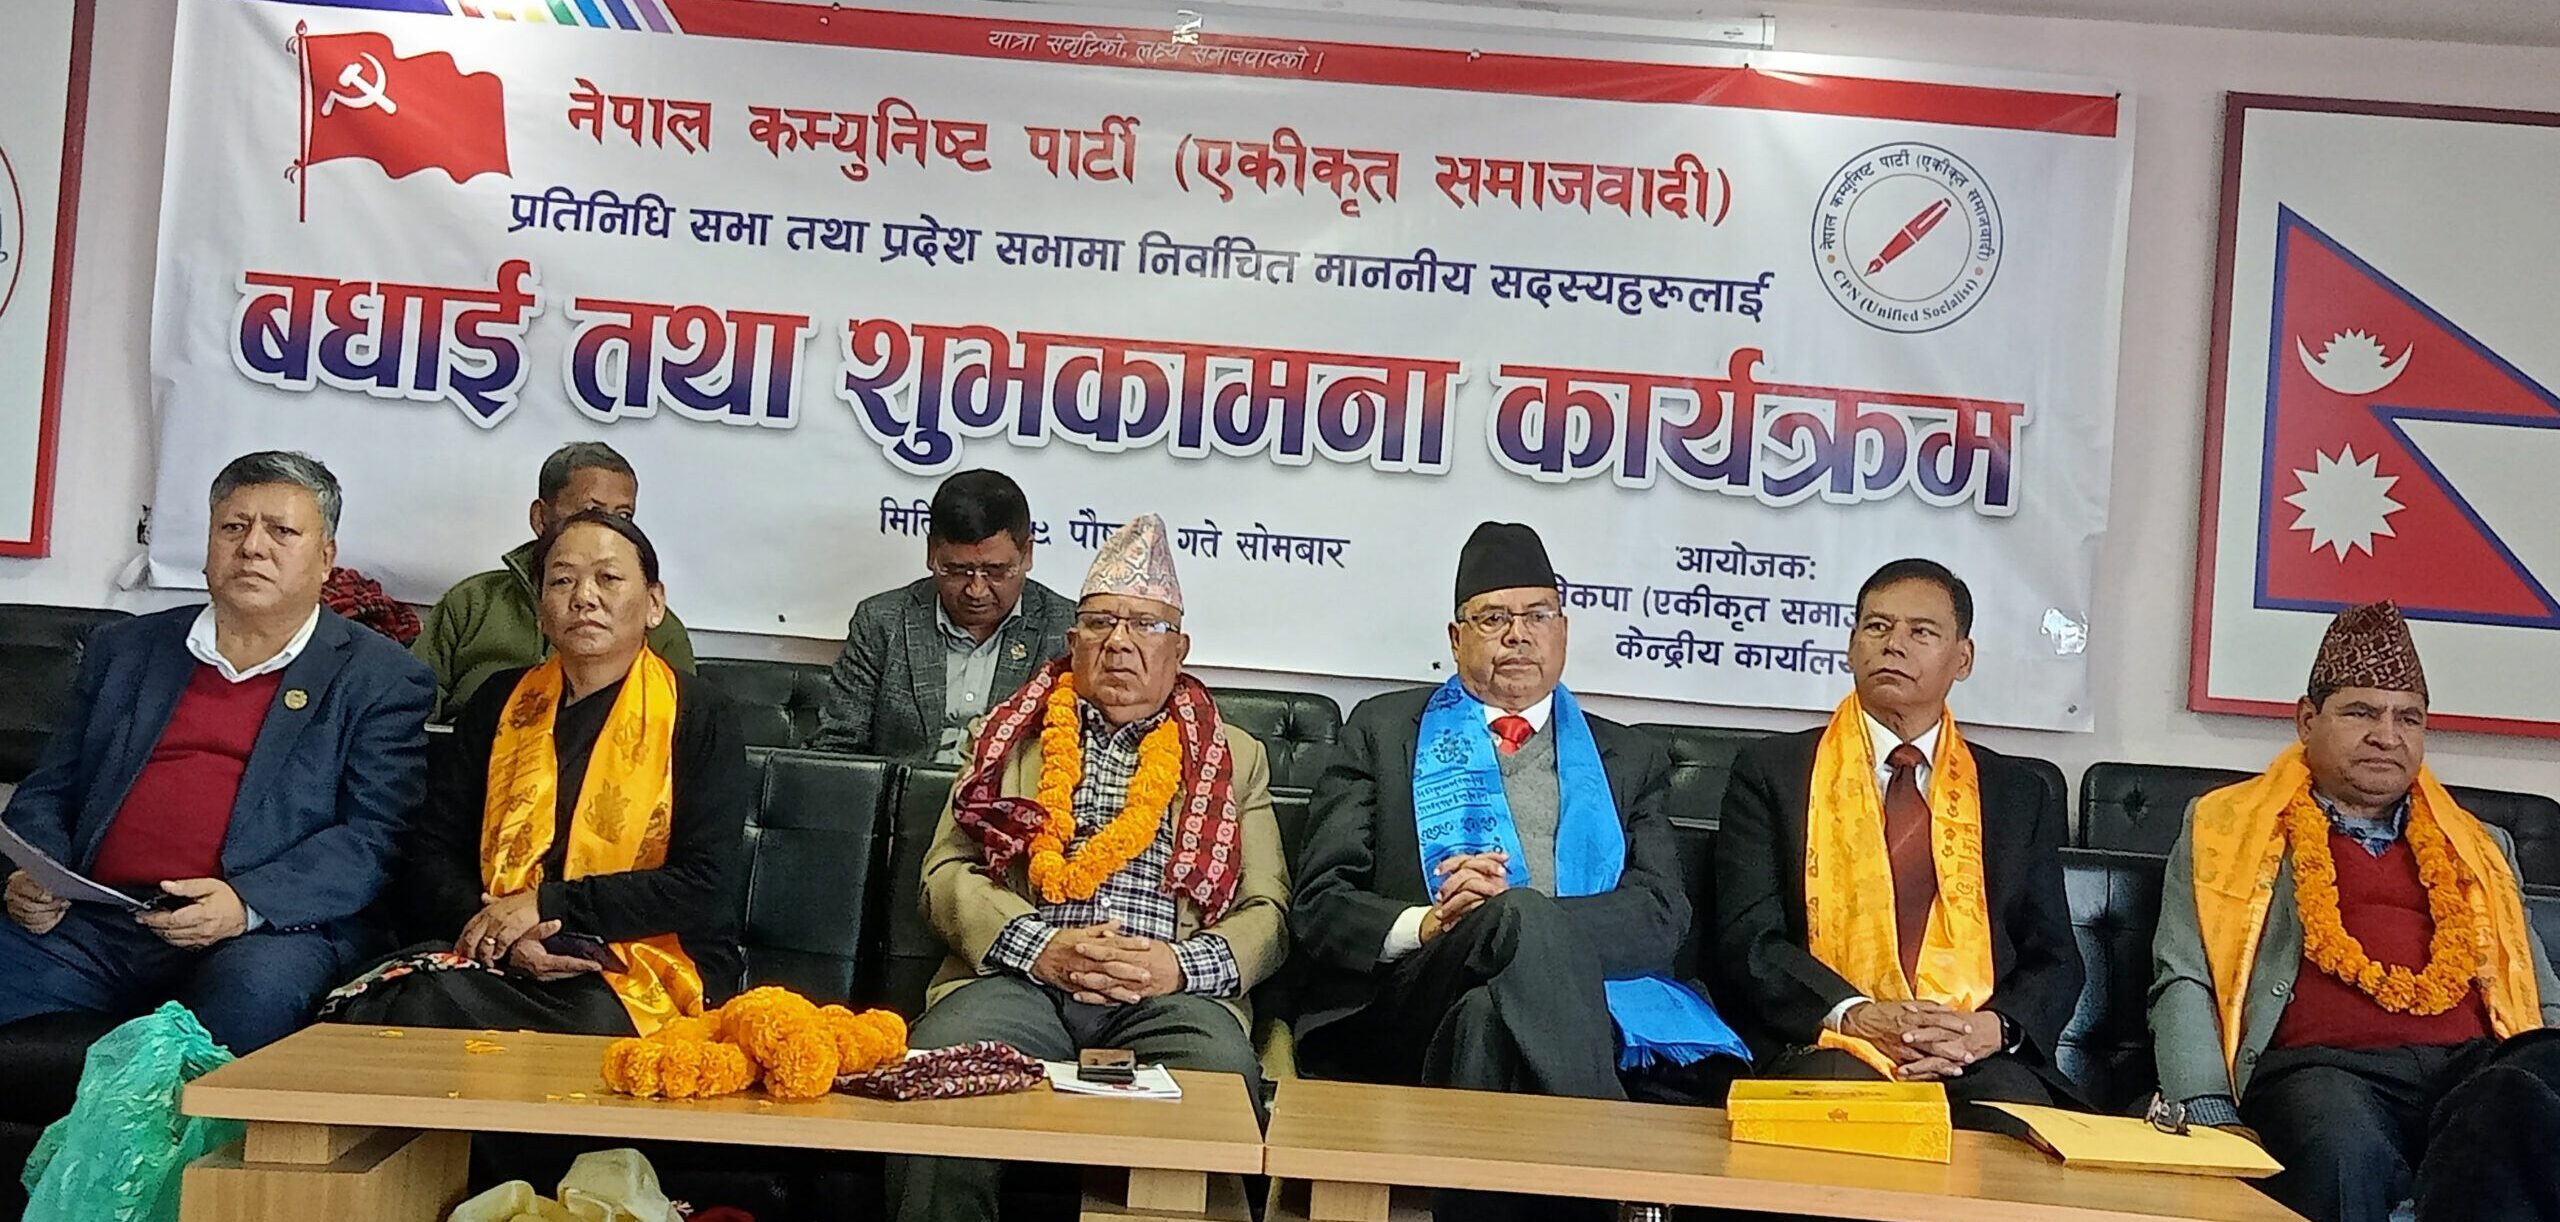 वाम लोकतान्त्रिक-गठबन्धनको नेतृत्वमा नयाँ सरकार गठन हुन्छ : अध्यक्ष नेपाल